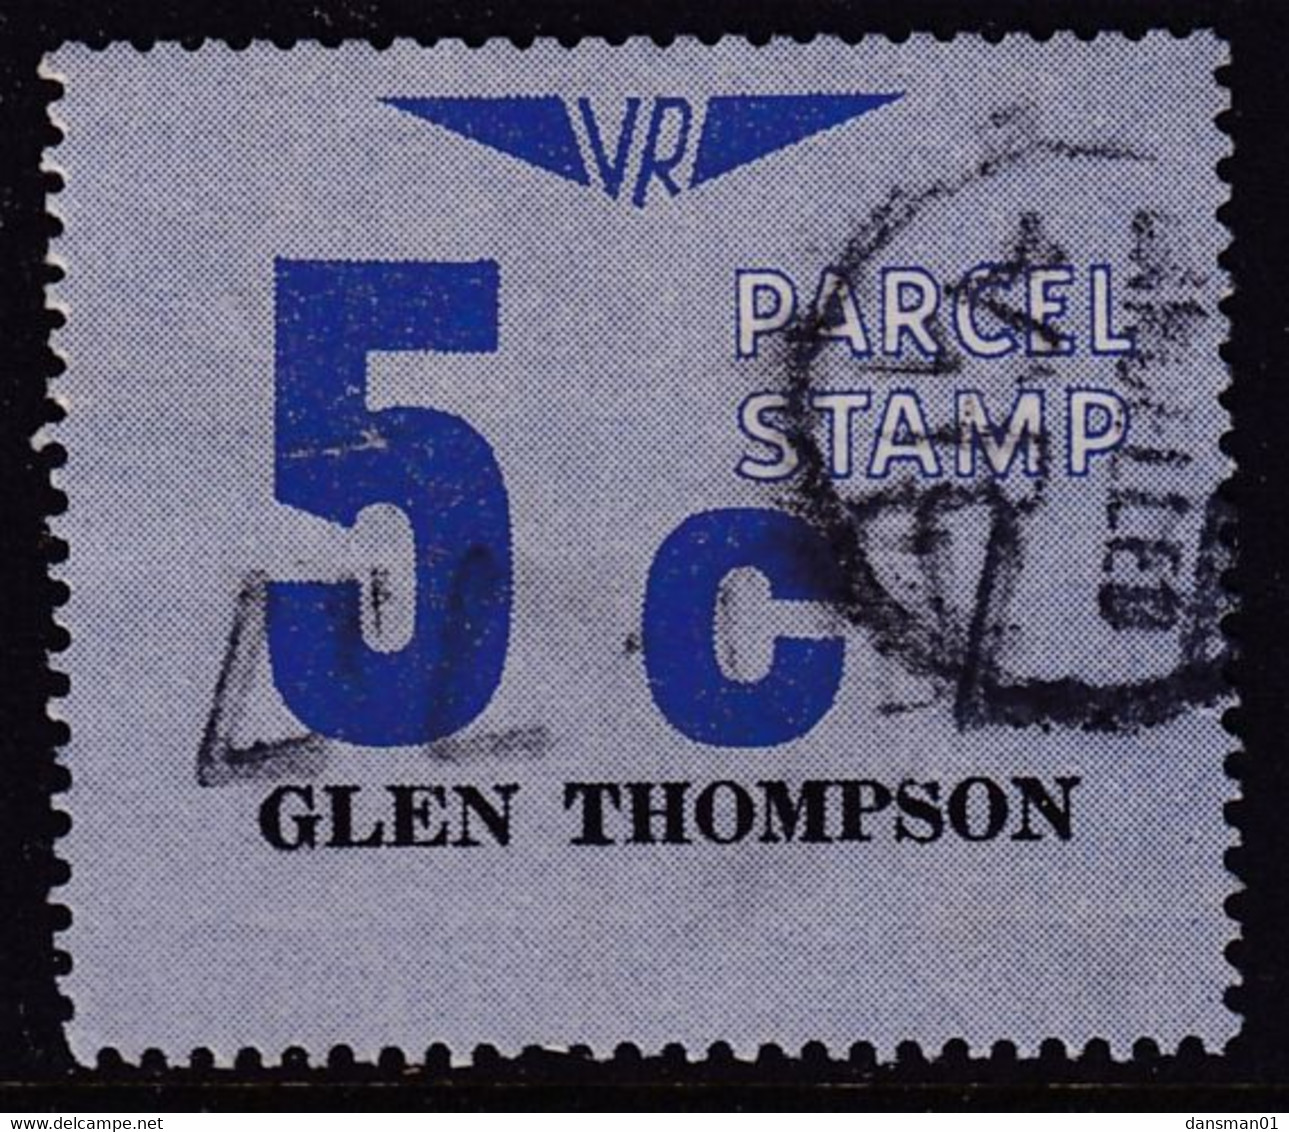 Victoria 1966 Railway Parcel Stamp 5c GLEN THOMPSON Used - Variétés Et Curiosités